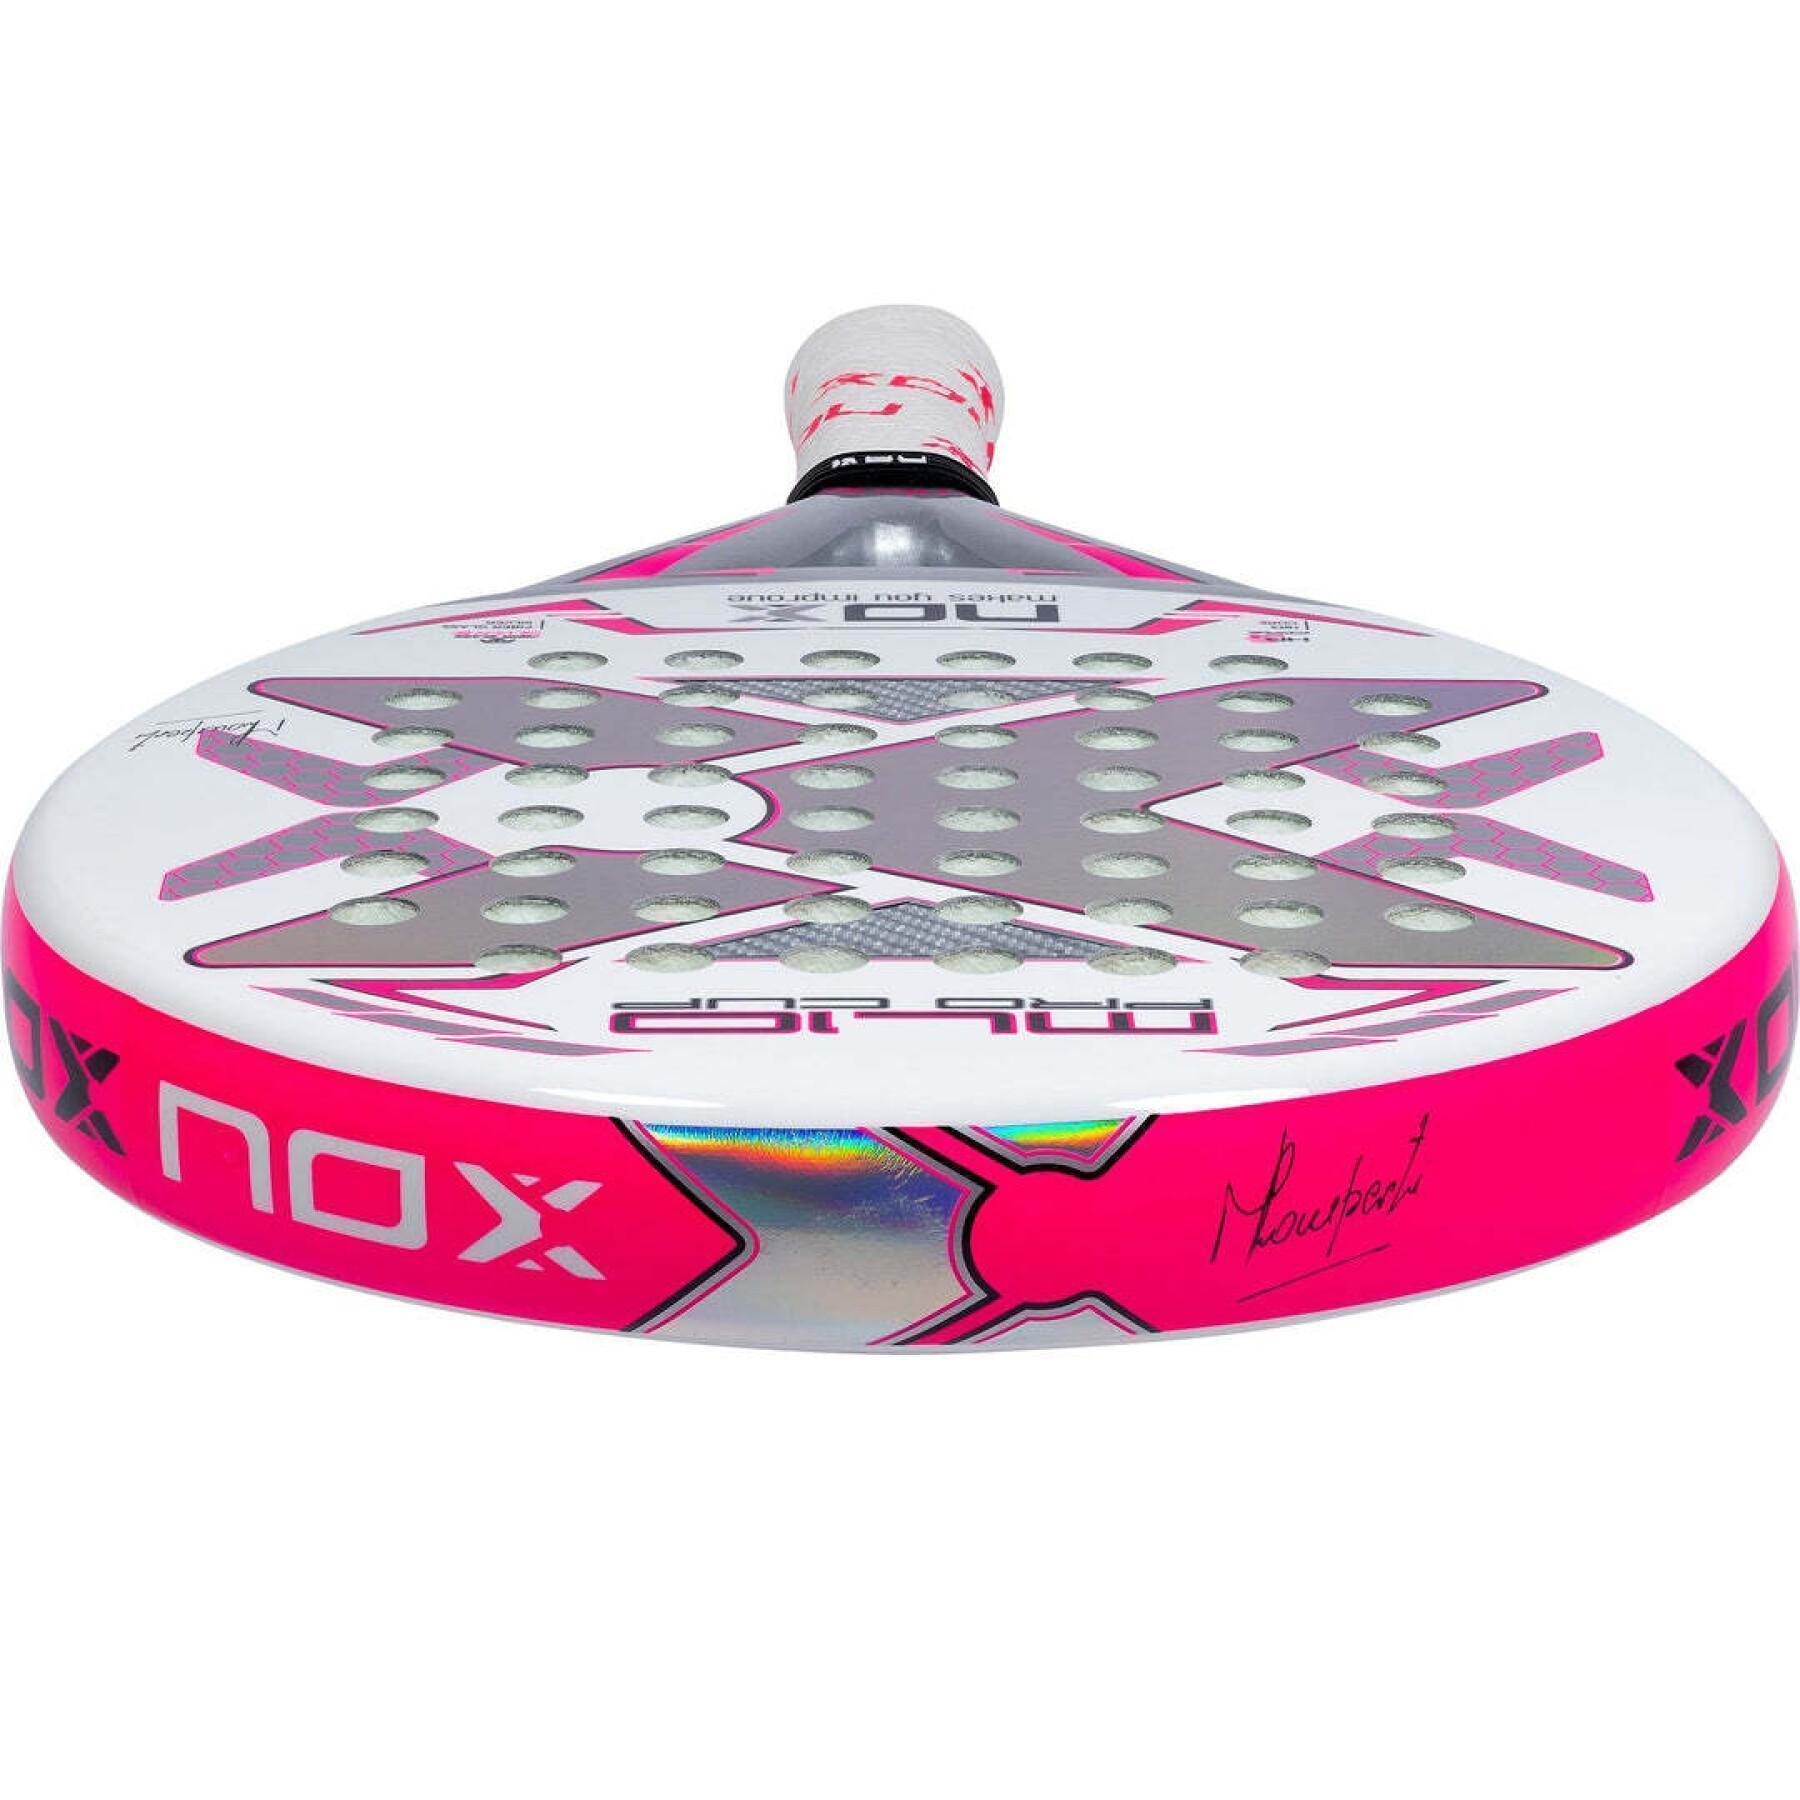 Racket van padel Nox ML10 Pro Cup